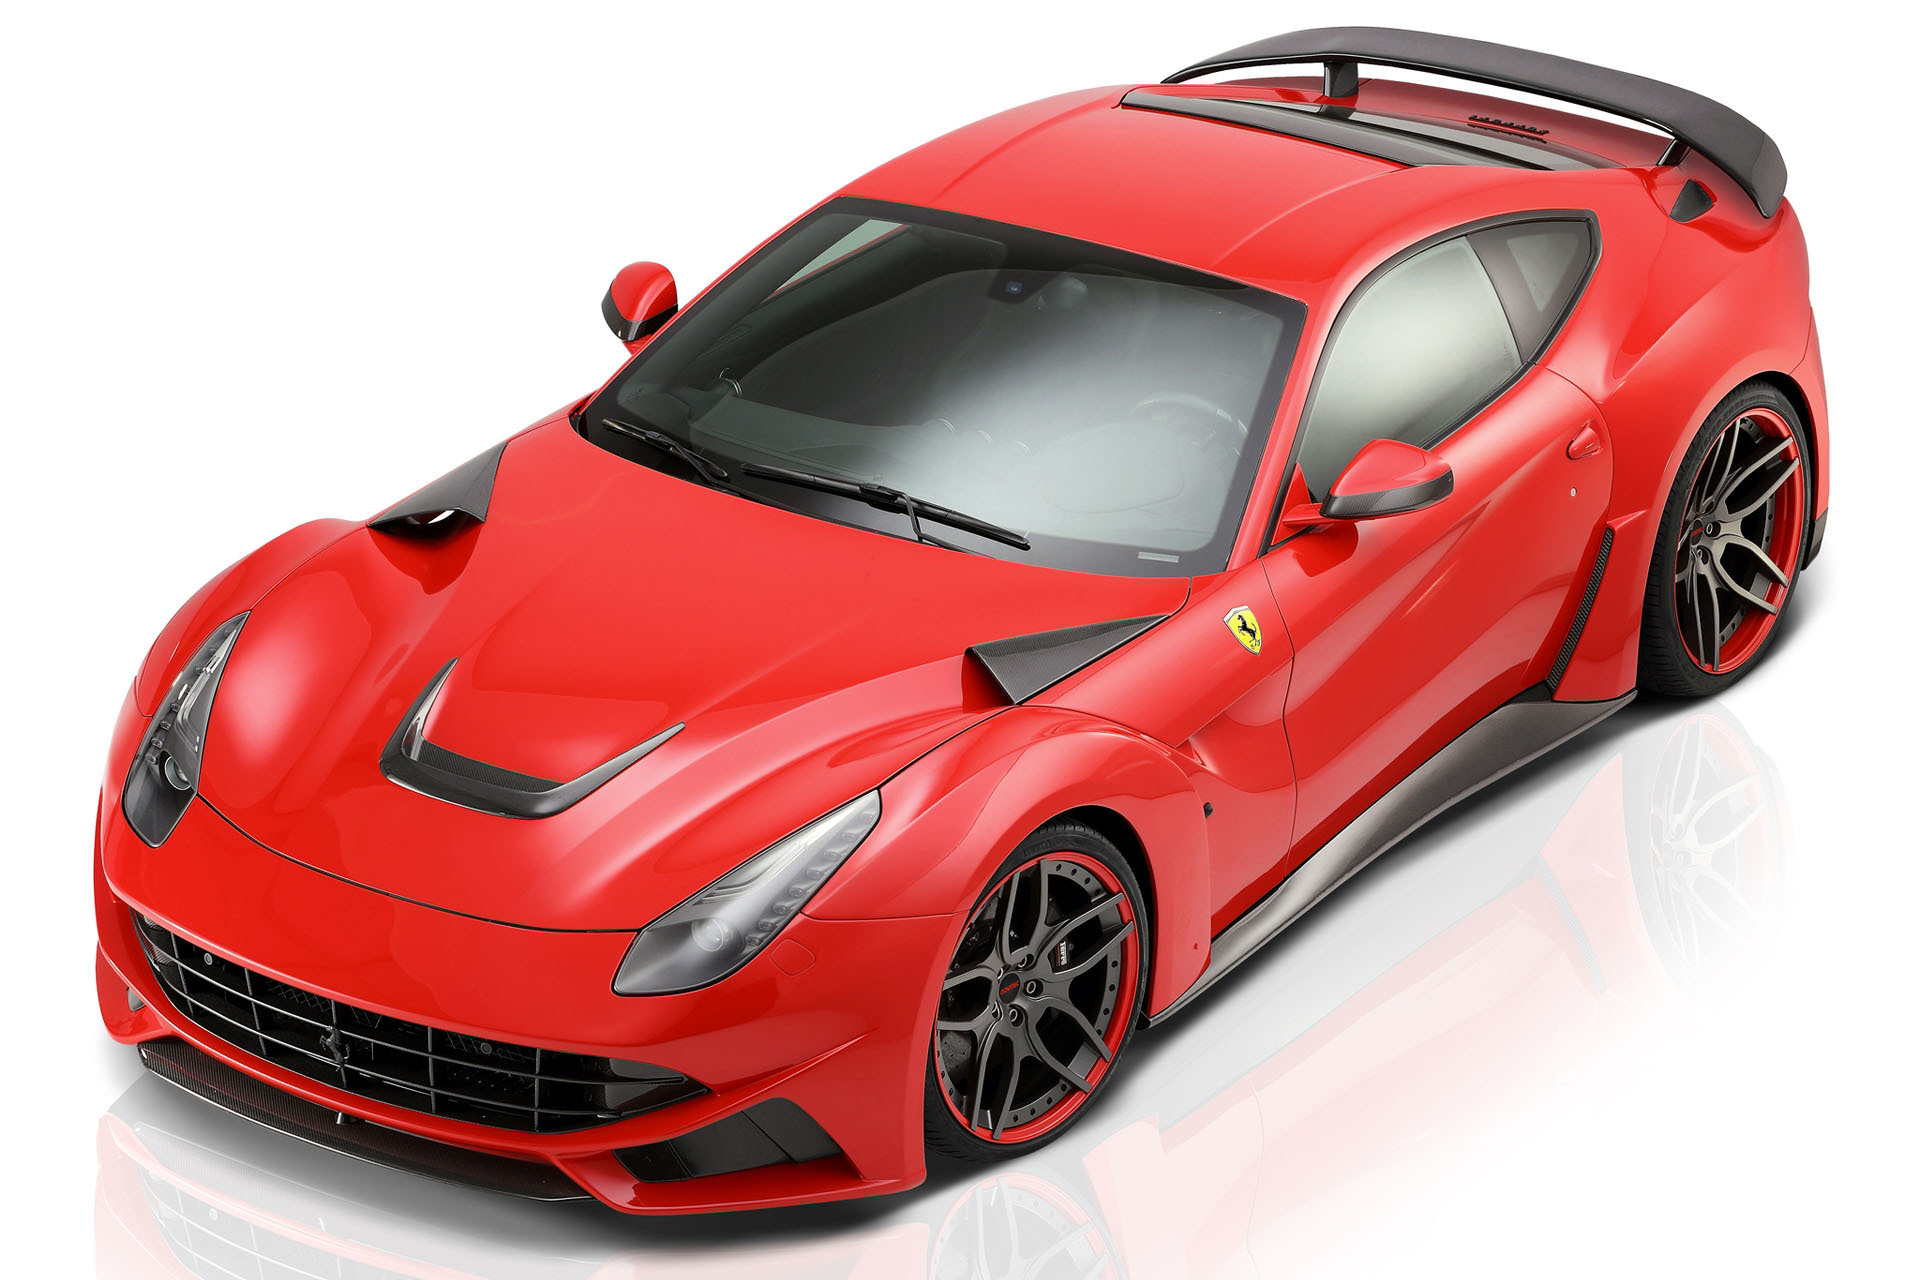 Carbon fiber wide body kit Novitec Style for Ferrari F12 Berlinetta